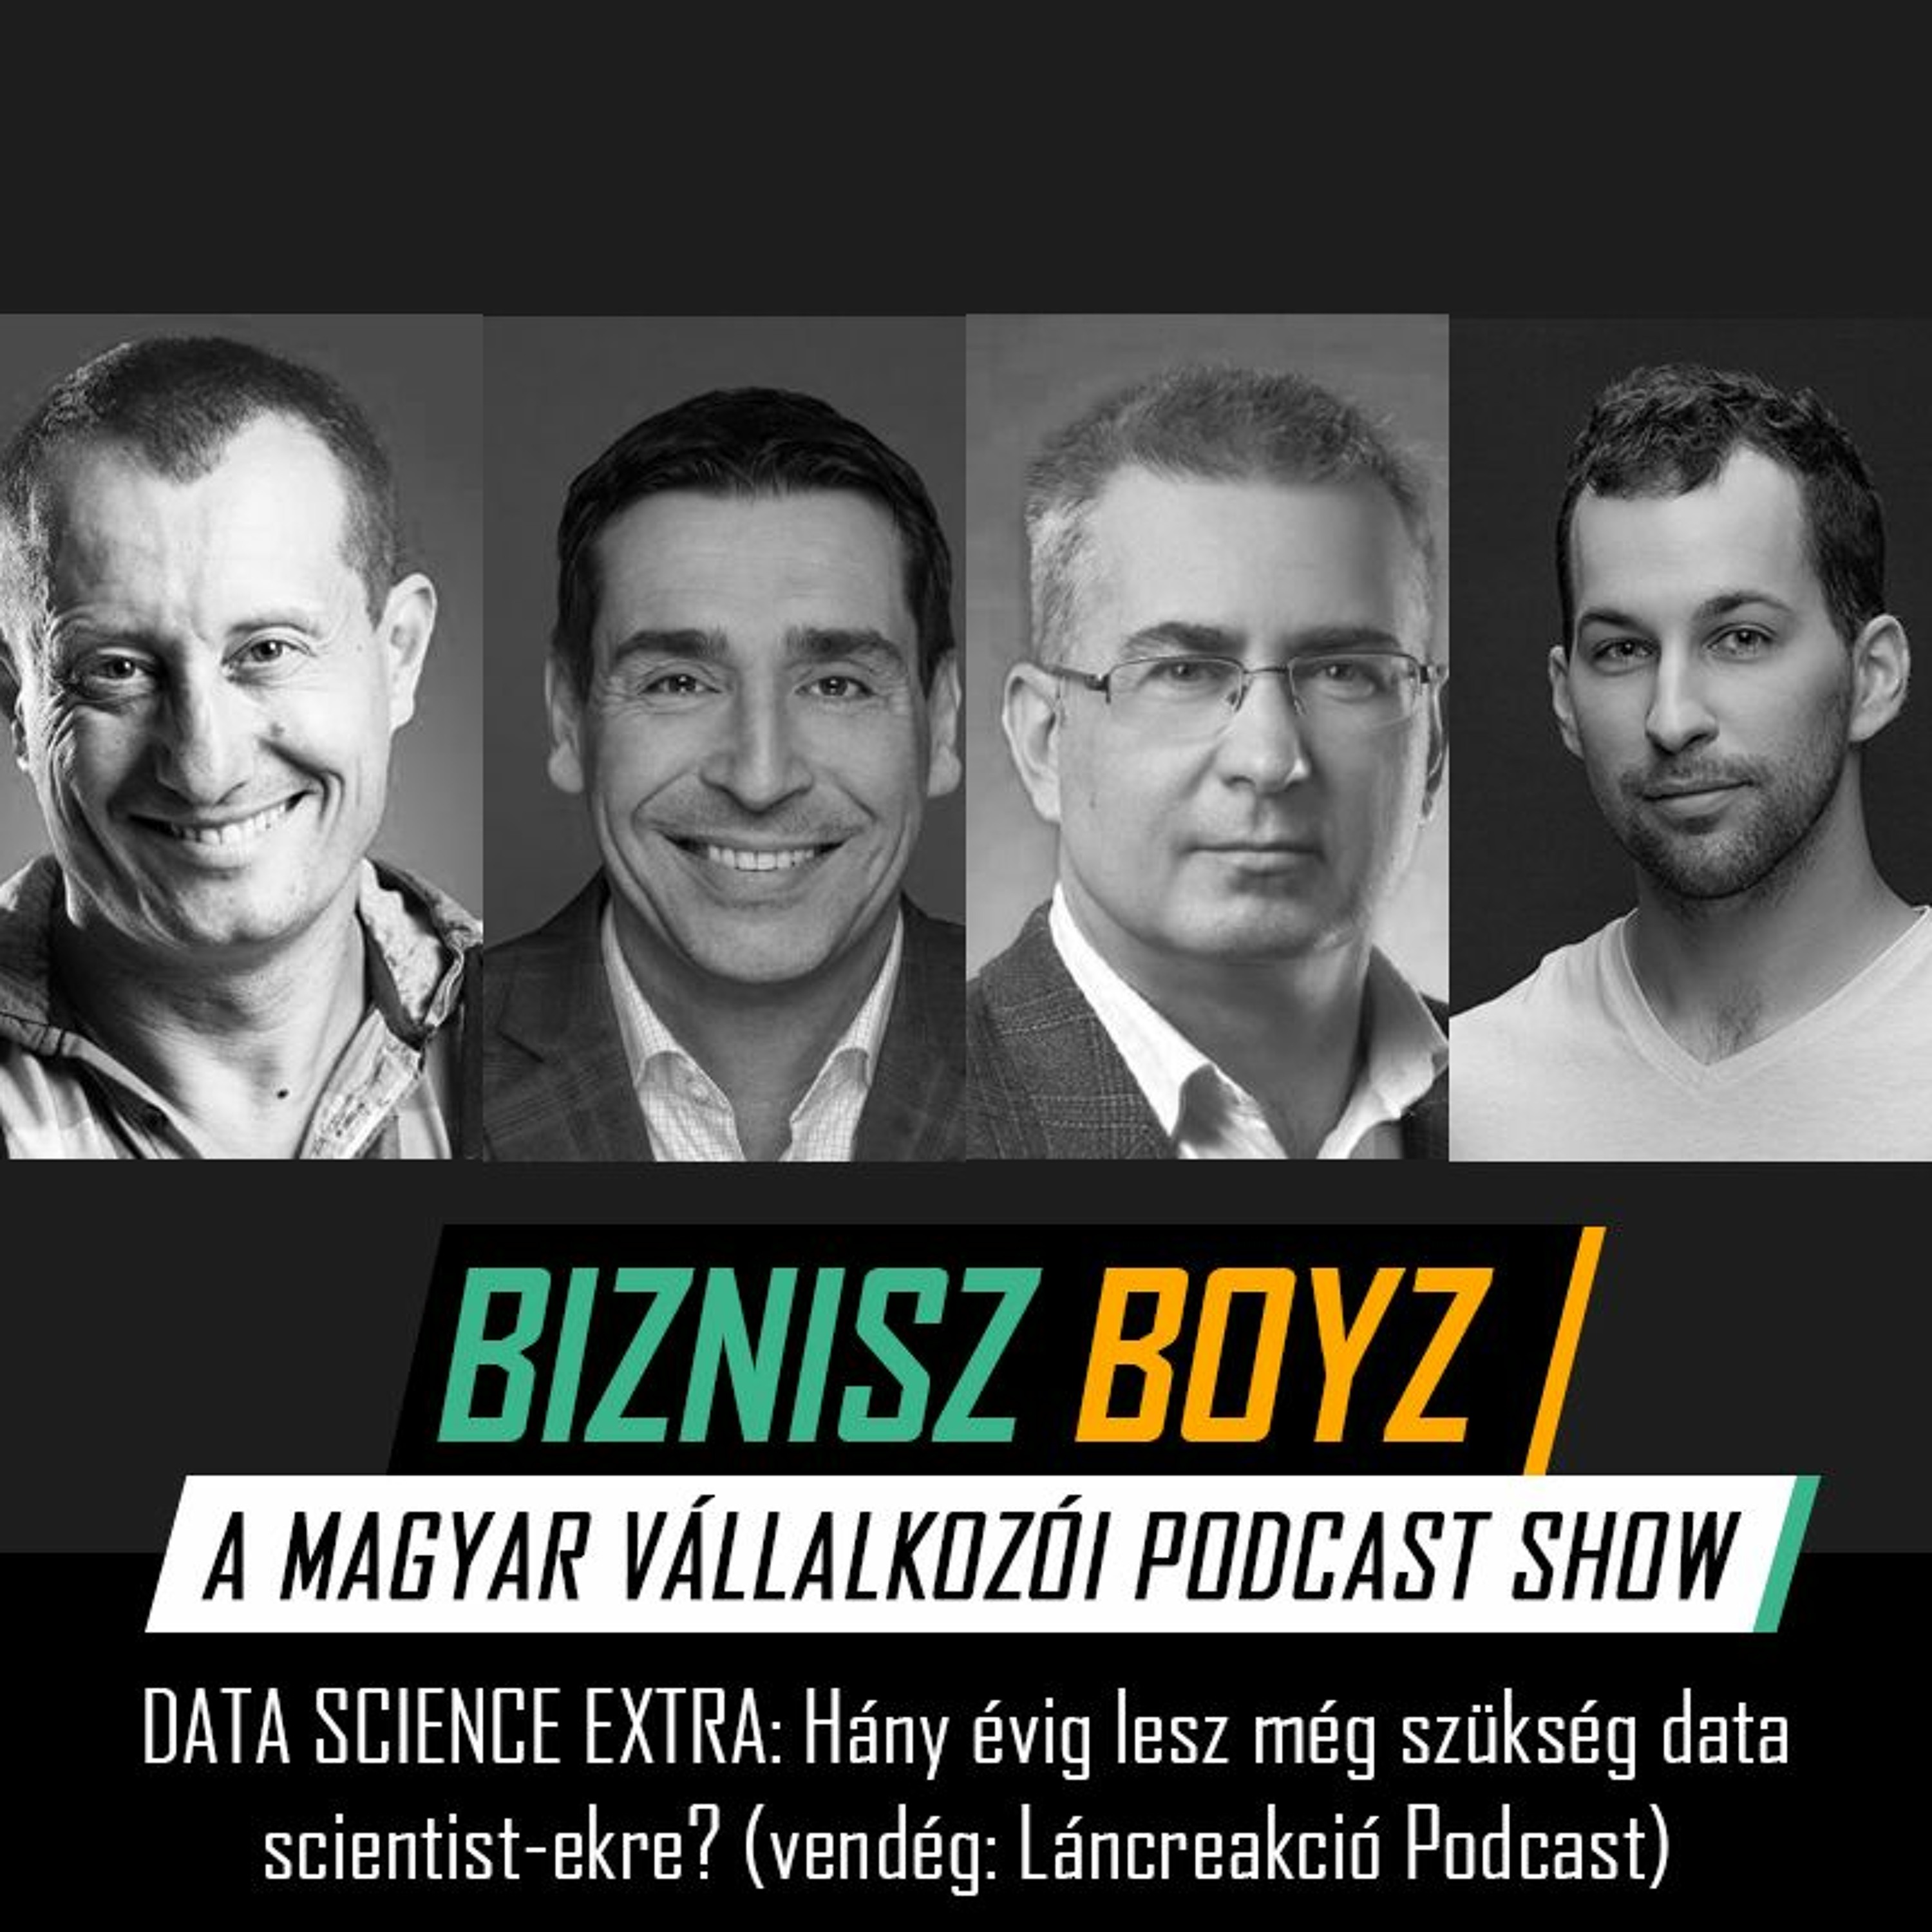 Data Science Extra #1: Hány évig lesz még szükség data scientist-ekre? (vendég: Láncreakció Podcast)